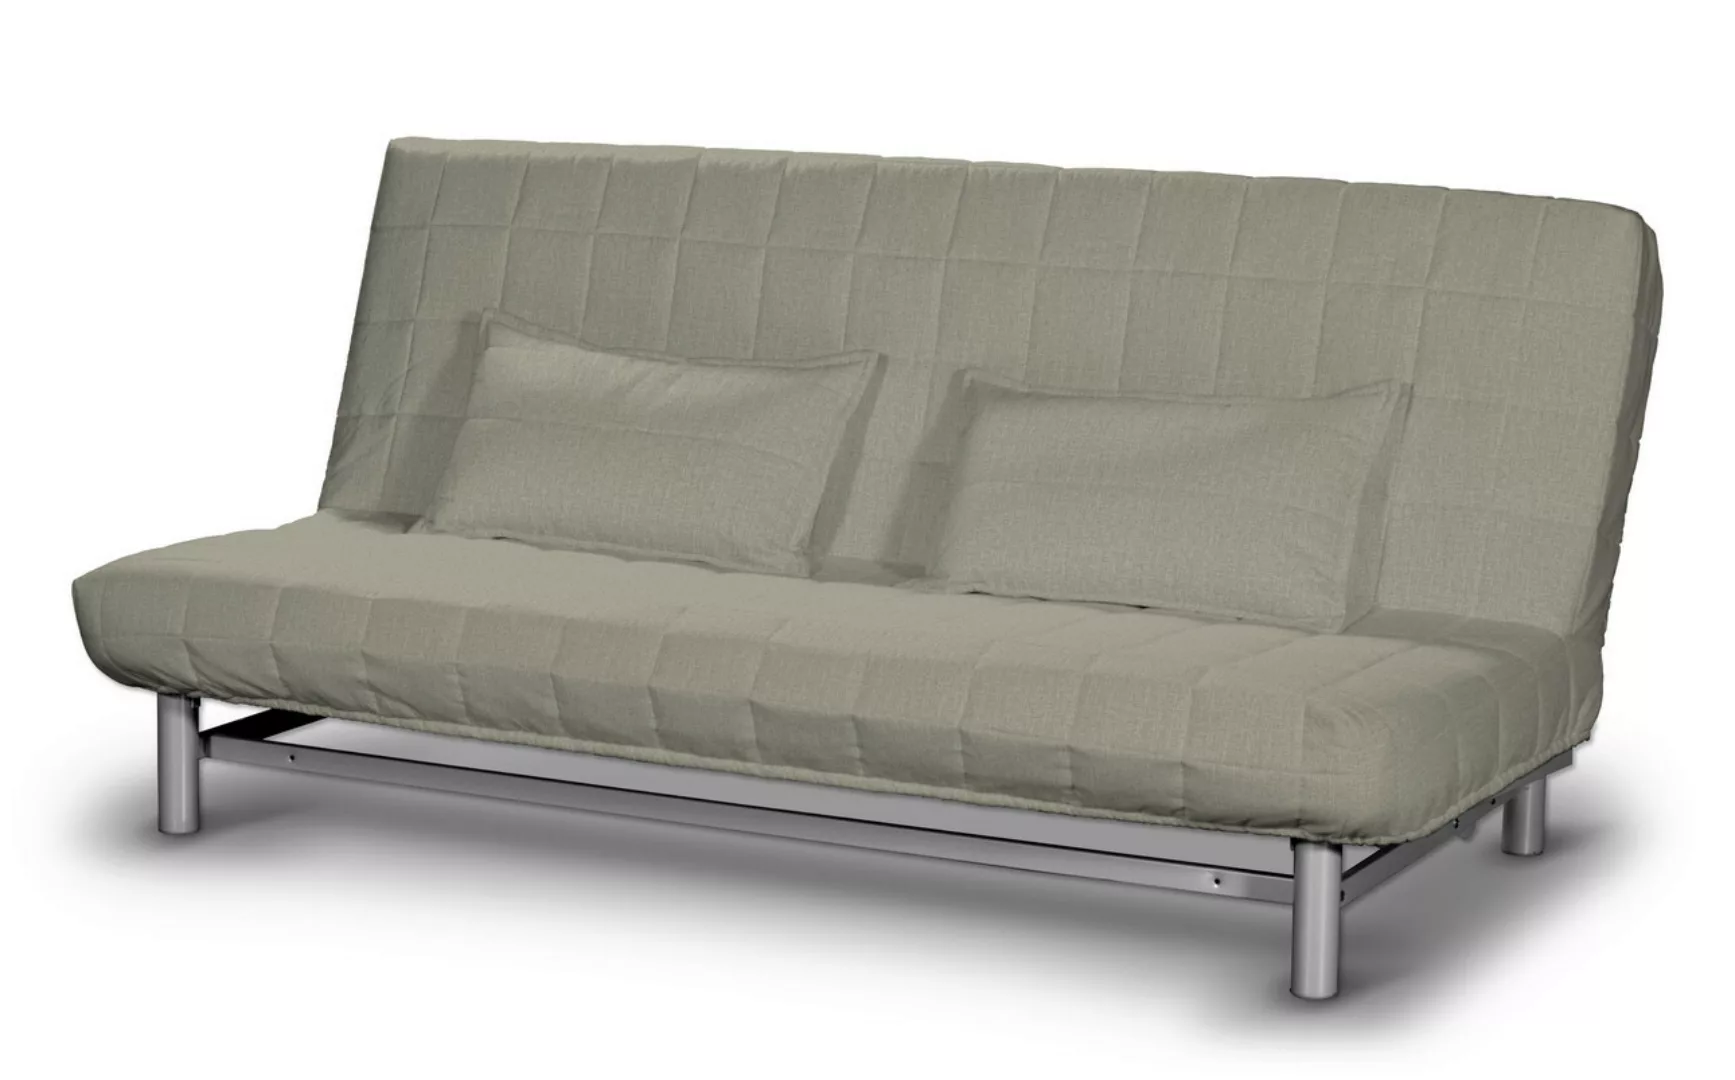 Bezug für Beddinge Sofa, kurz, beige- grau, Bezug für Beddinge, City (704-8 günstig online kaufen